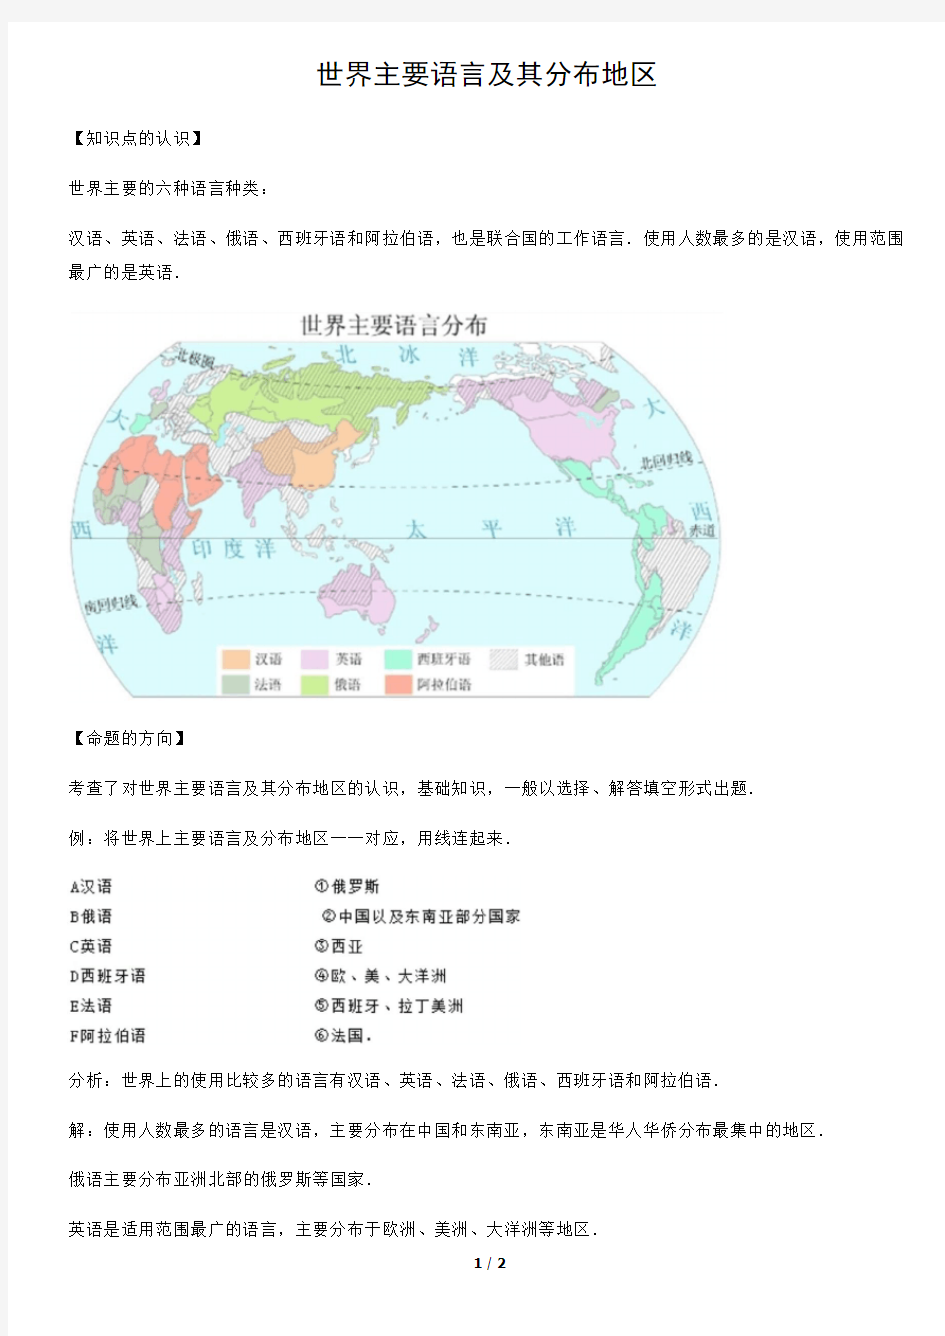 世界主要语言及其分布地区-初中地理知识